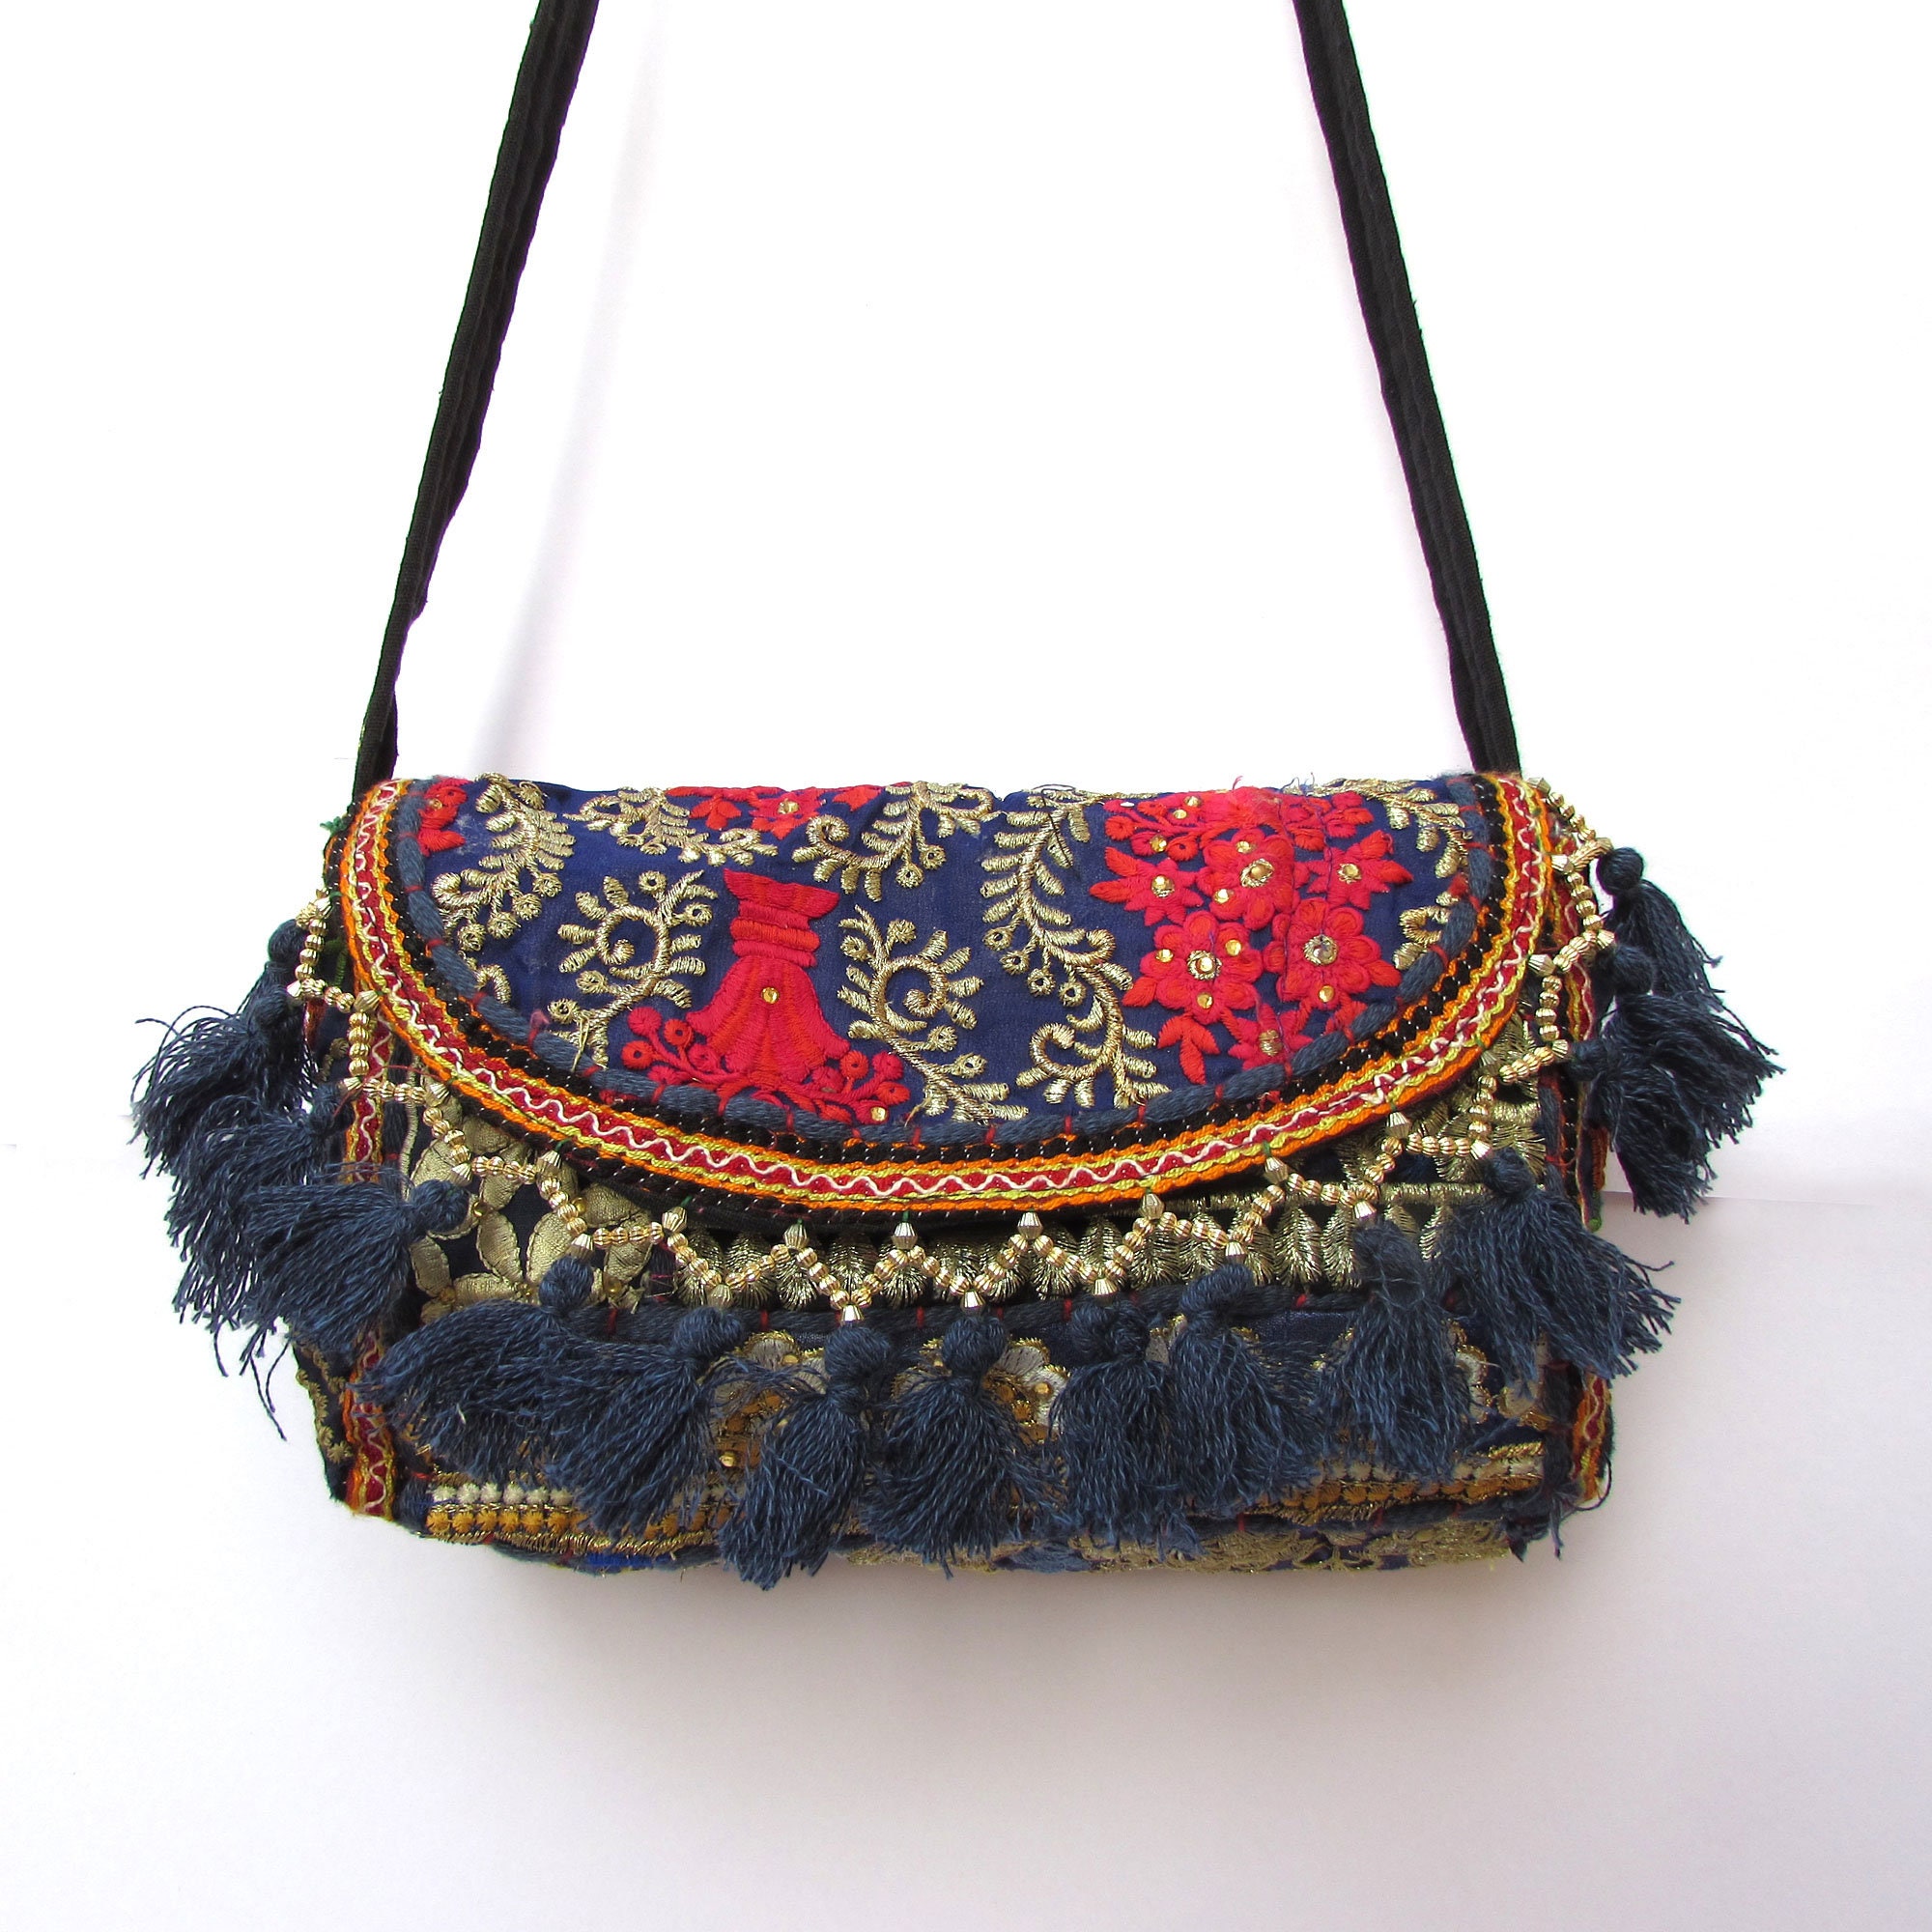 Gujarati Potli Bag With Embroidery And Mirror Work | Buddha And Beyond